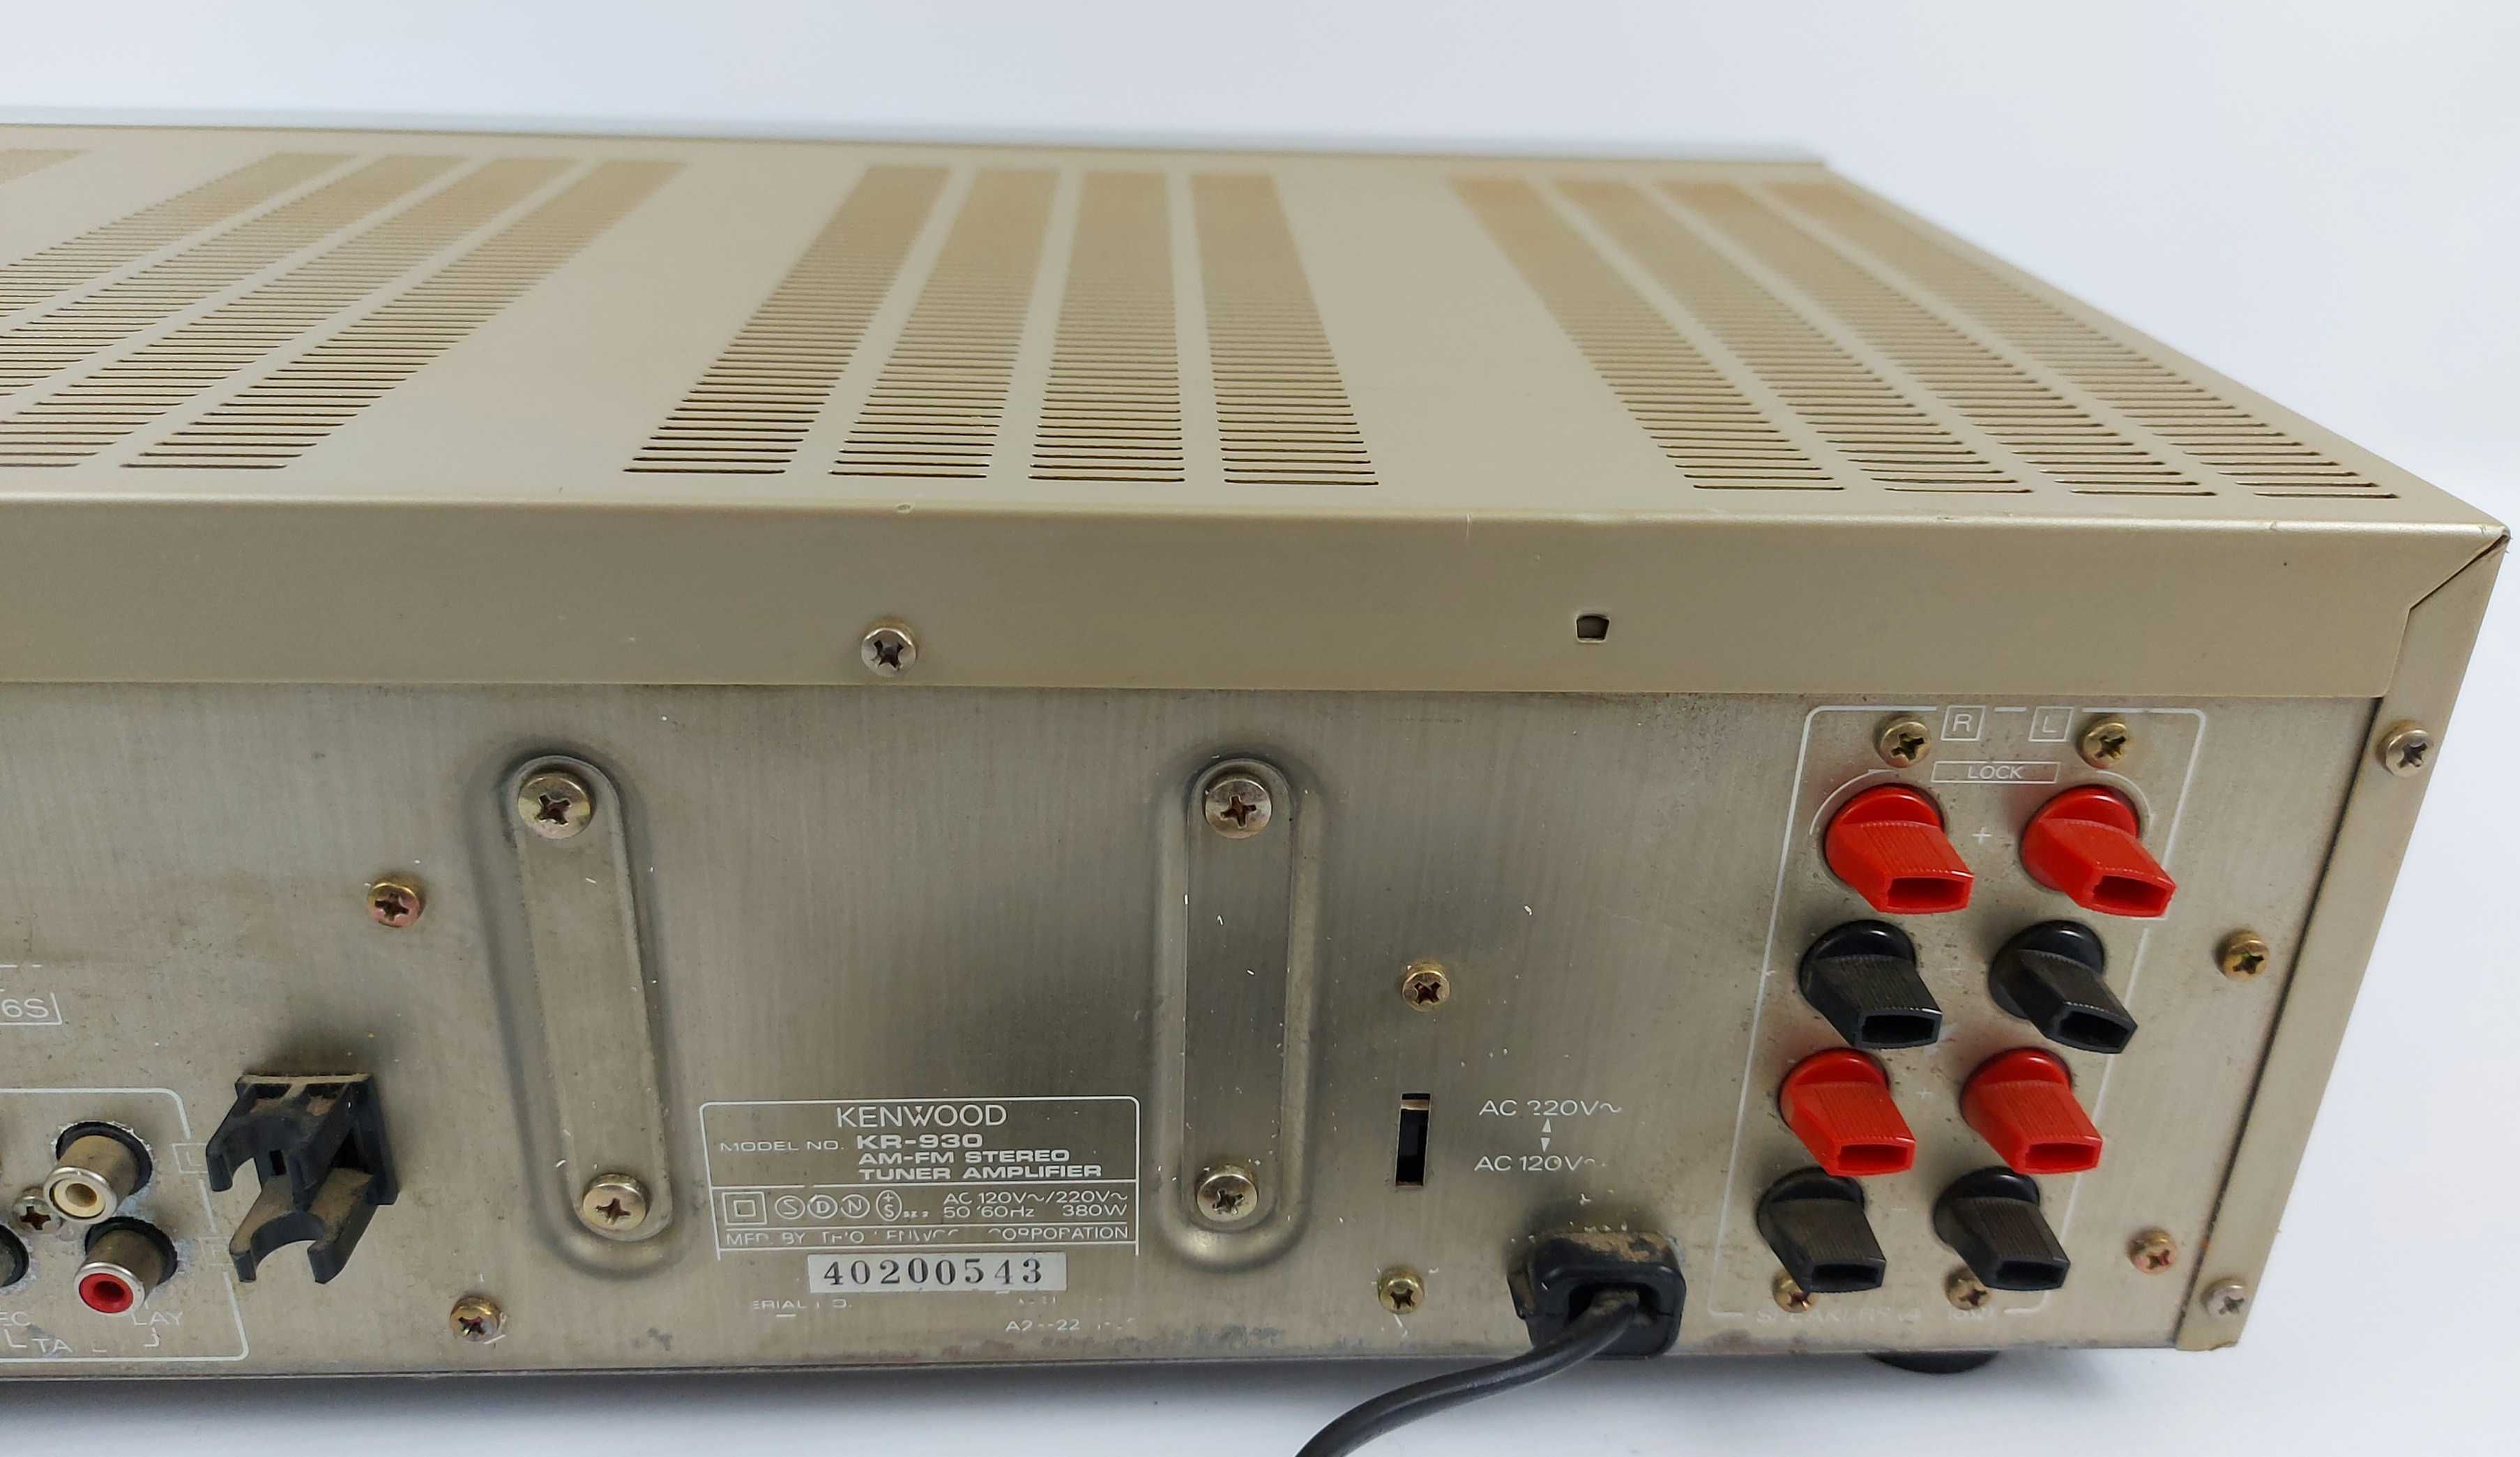 Kenwood KR-930 - amplituner stereo